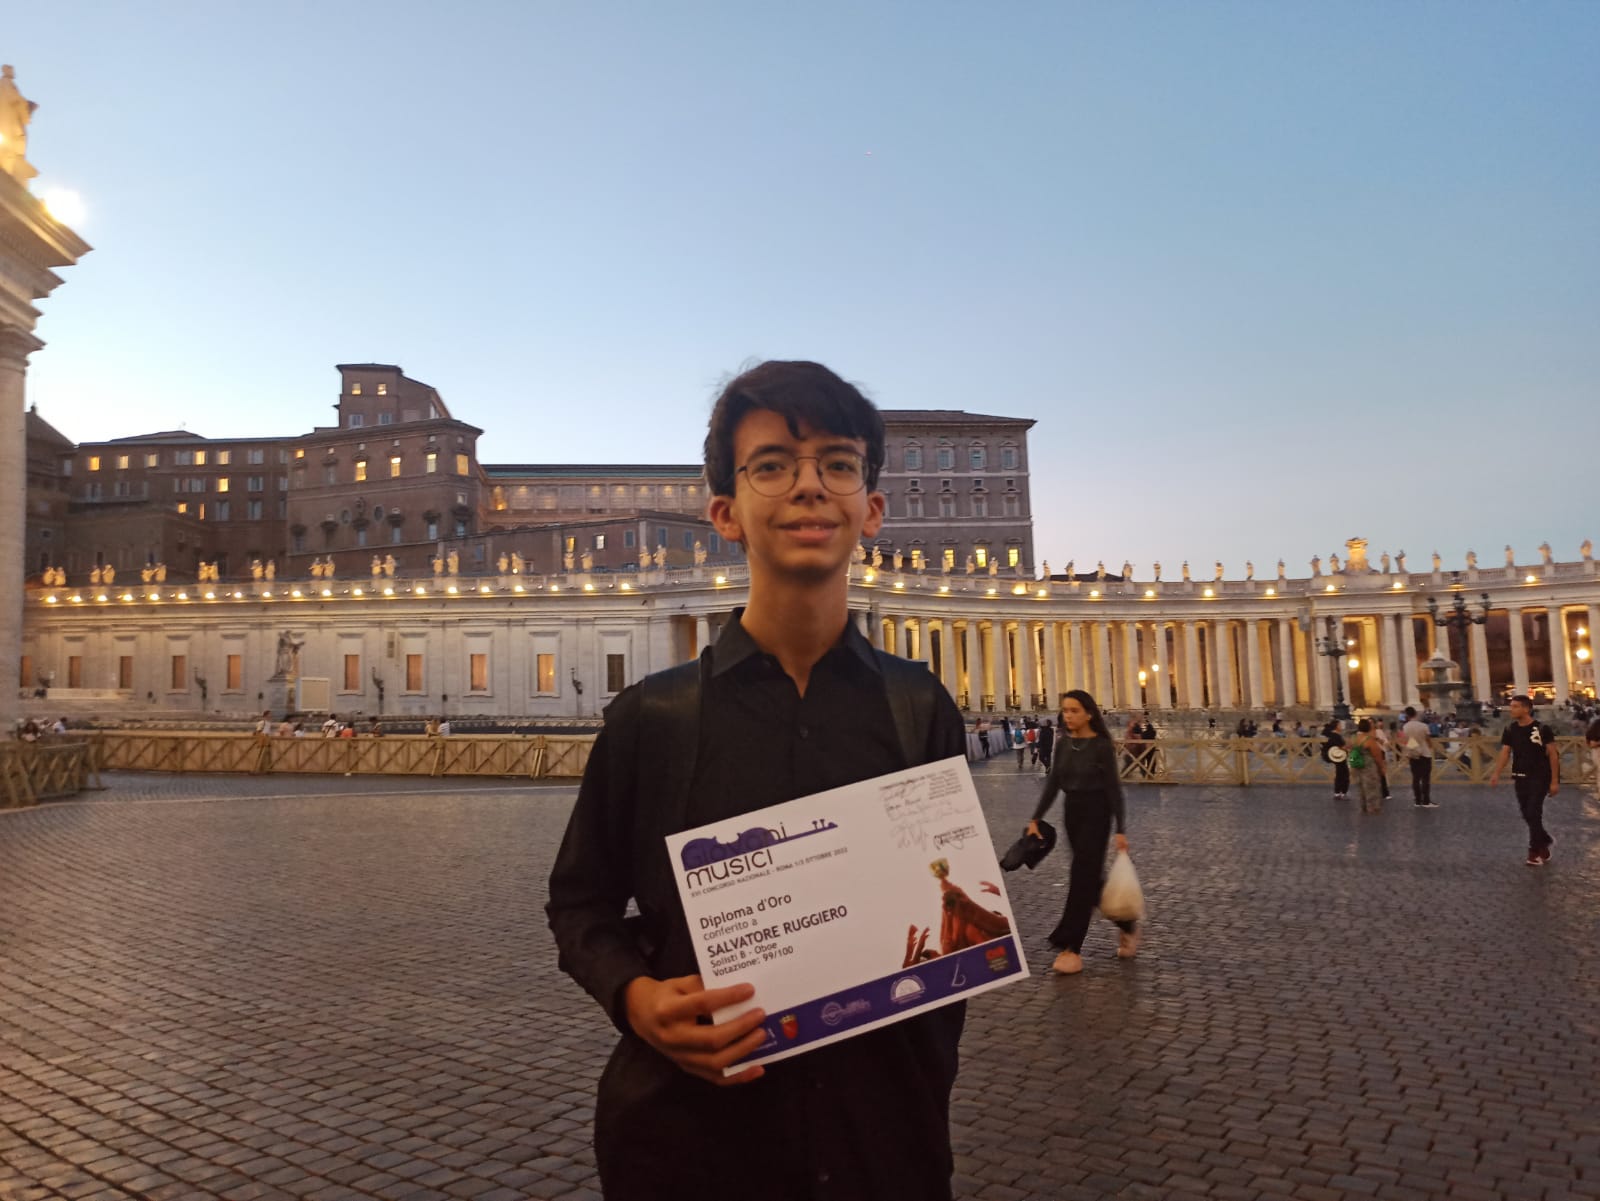 Airola| Il giovane oboista Ruggiero trionfa al “Premio Giovani Musici” di Roma